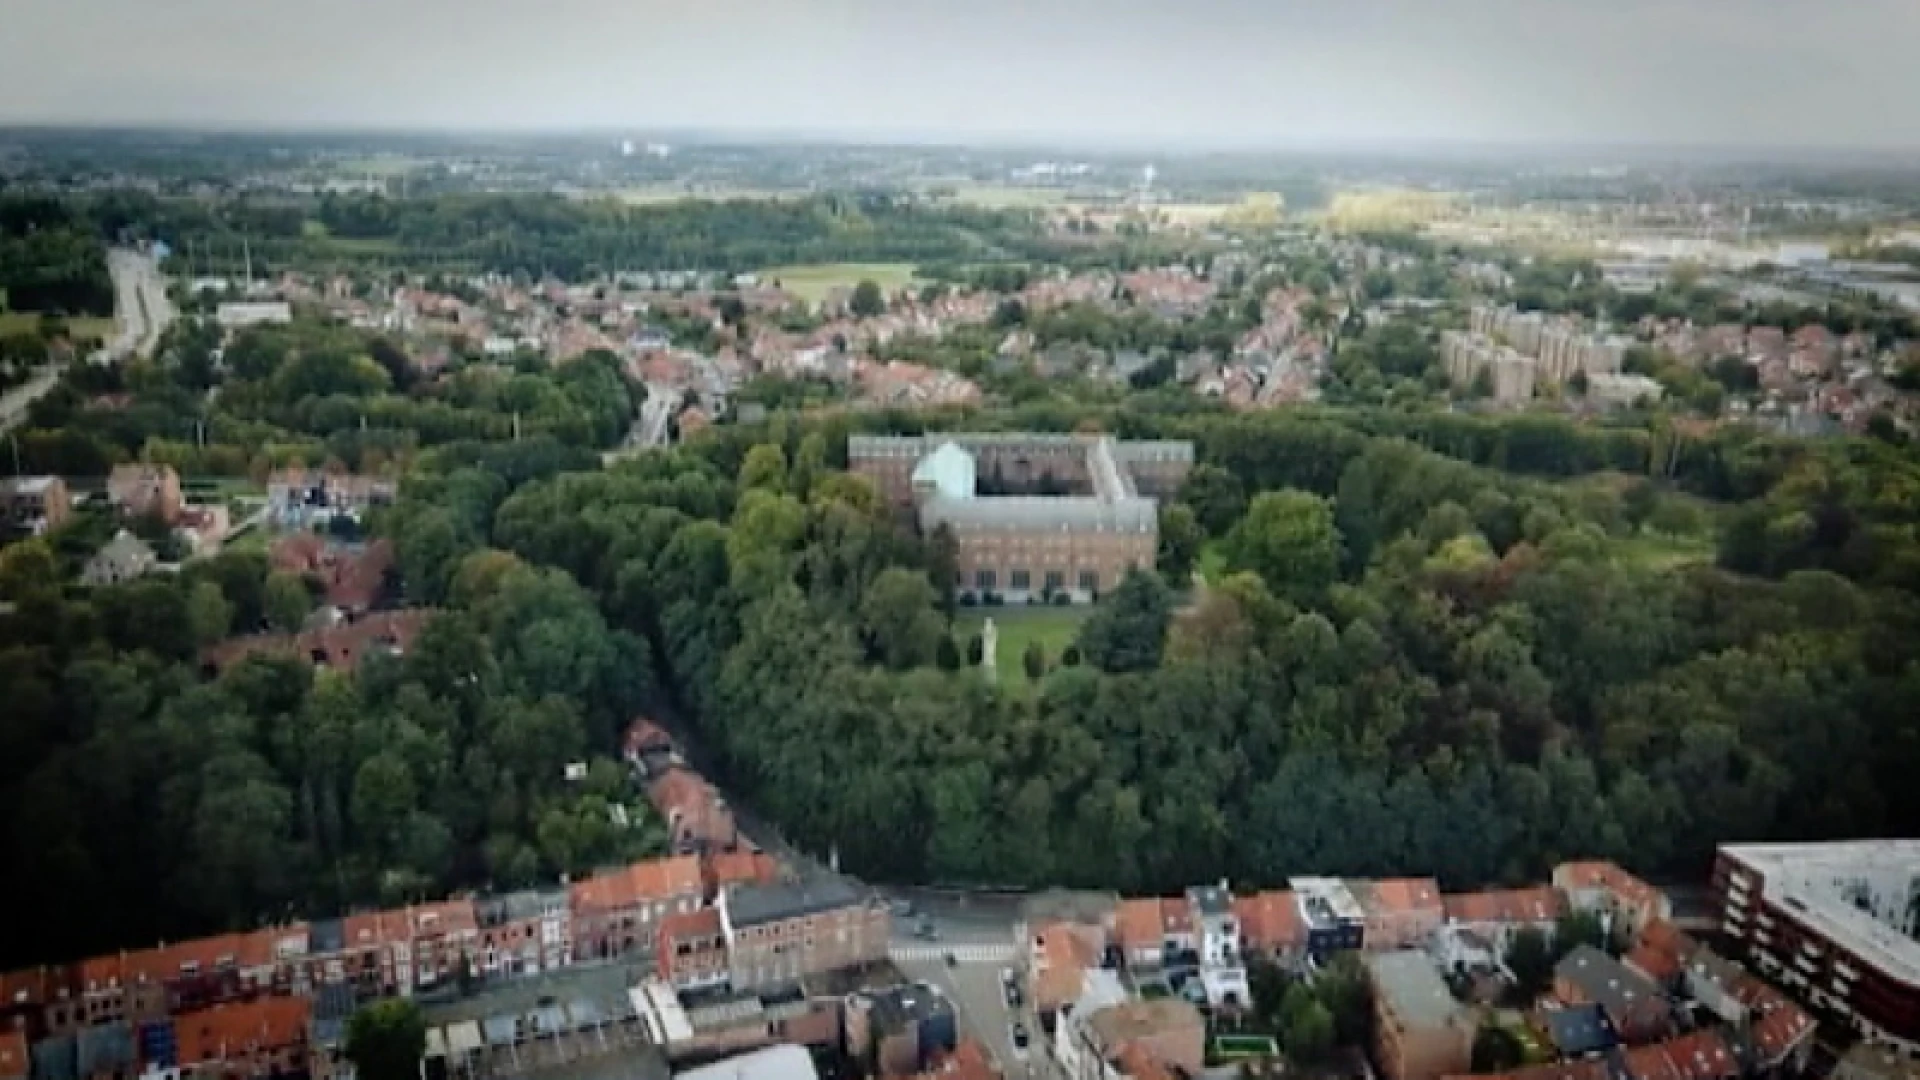 Rust er een vloek op de Keizersberg in Leuven? Frederic Hecq bundelt verhalen over historische site in boek